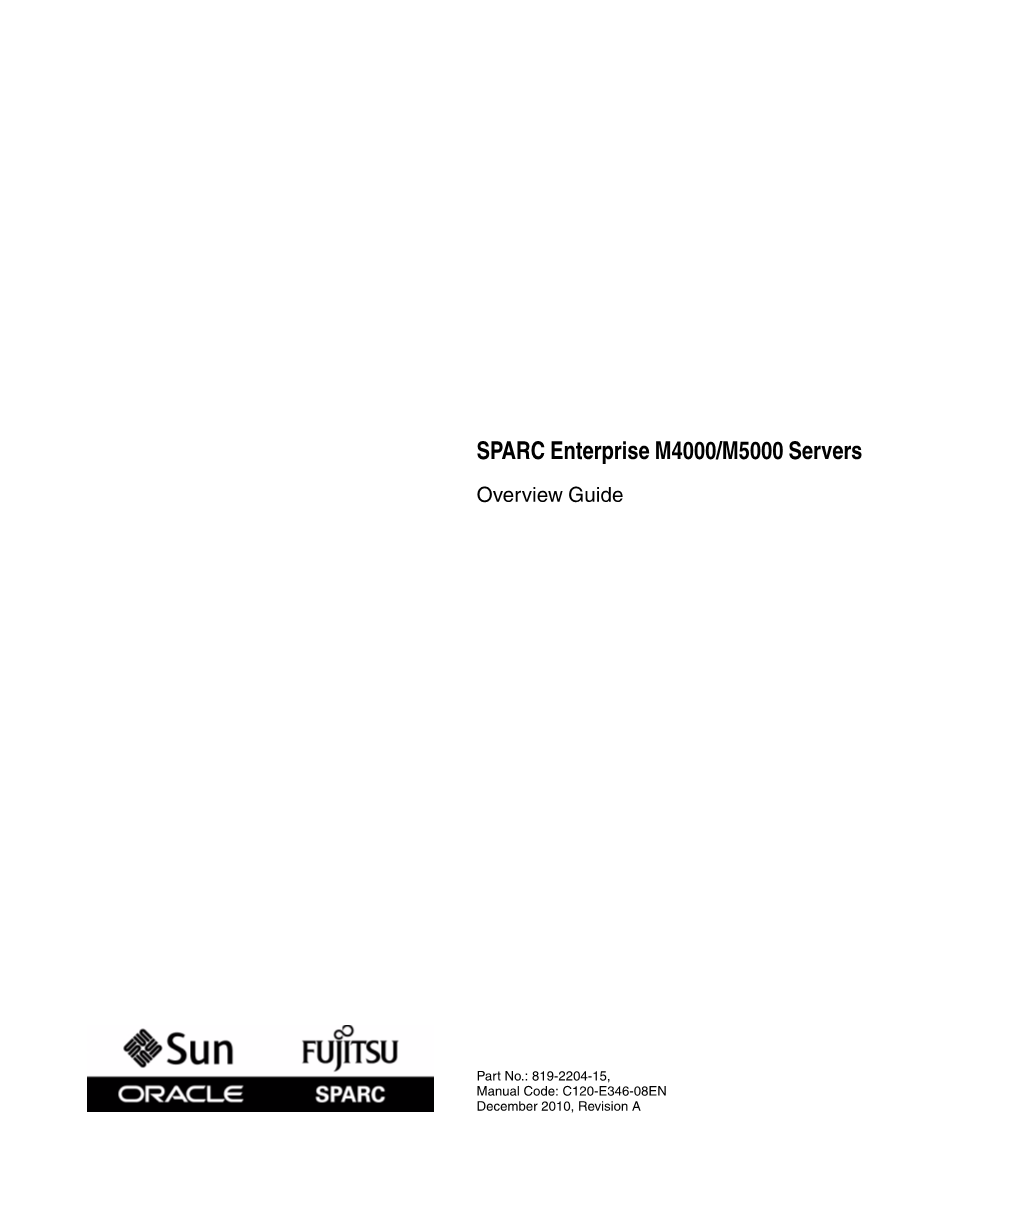 SPARC Enterprise M4000/M5000 Servers Overview Guide • December 2010 2.4.2 Availability 2–9 2.4.3 Serviceability 2–10